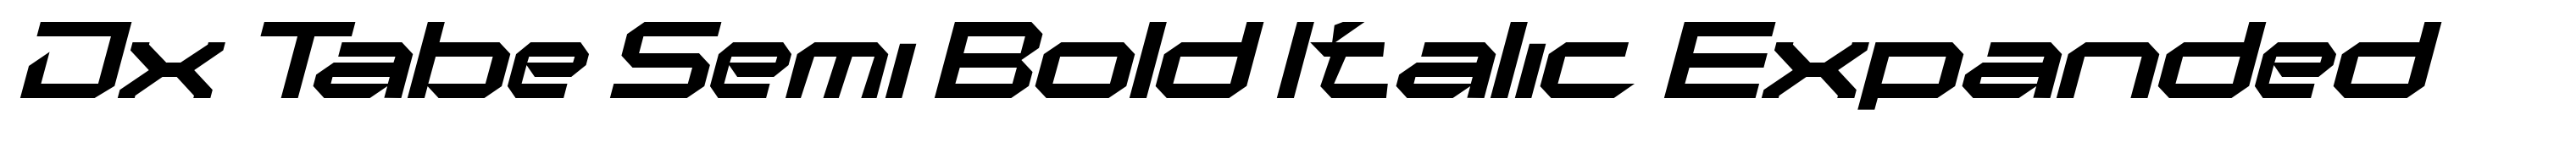 Jx Tabe Semi Bold Italic Expanded